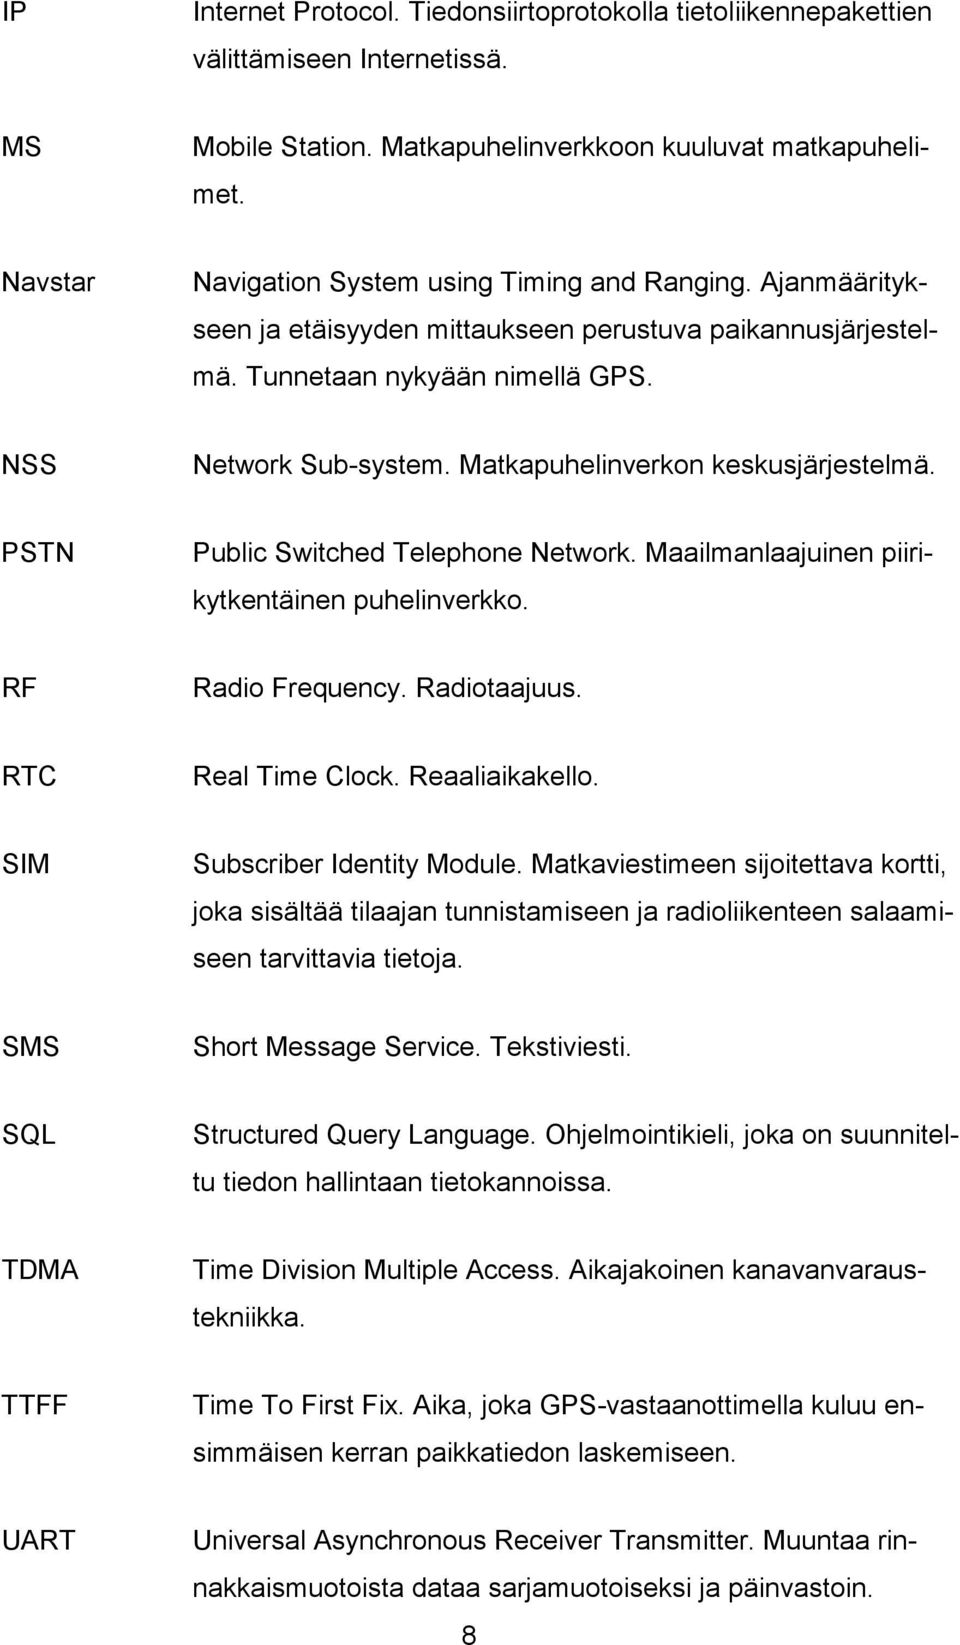 Matkapuhelinverkon keskusjärjestelmä. PSTN Public Switched Telephone Network. Maailmanlaajuinen piirikytkentäinen puhelinverkko. RF Radio Frequency. Radiotaajuus. RTC Real Time Clock. Reaaliaikakello.